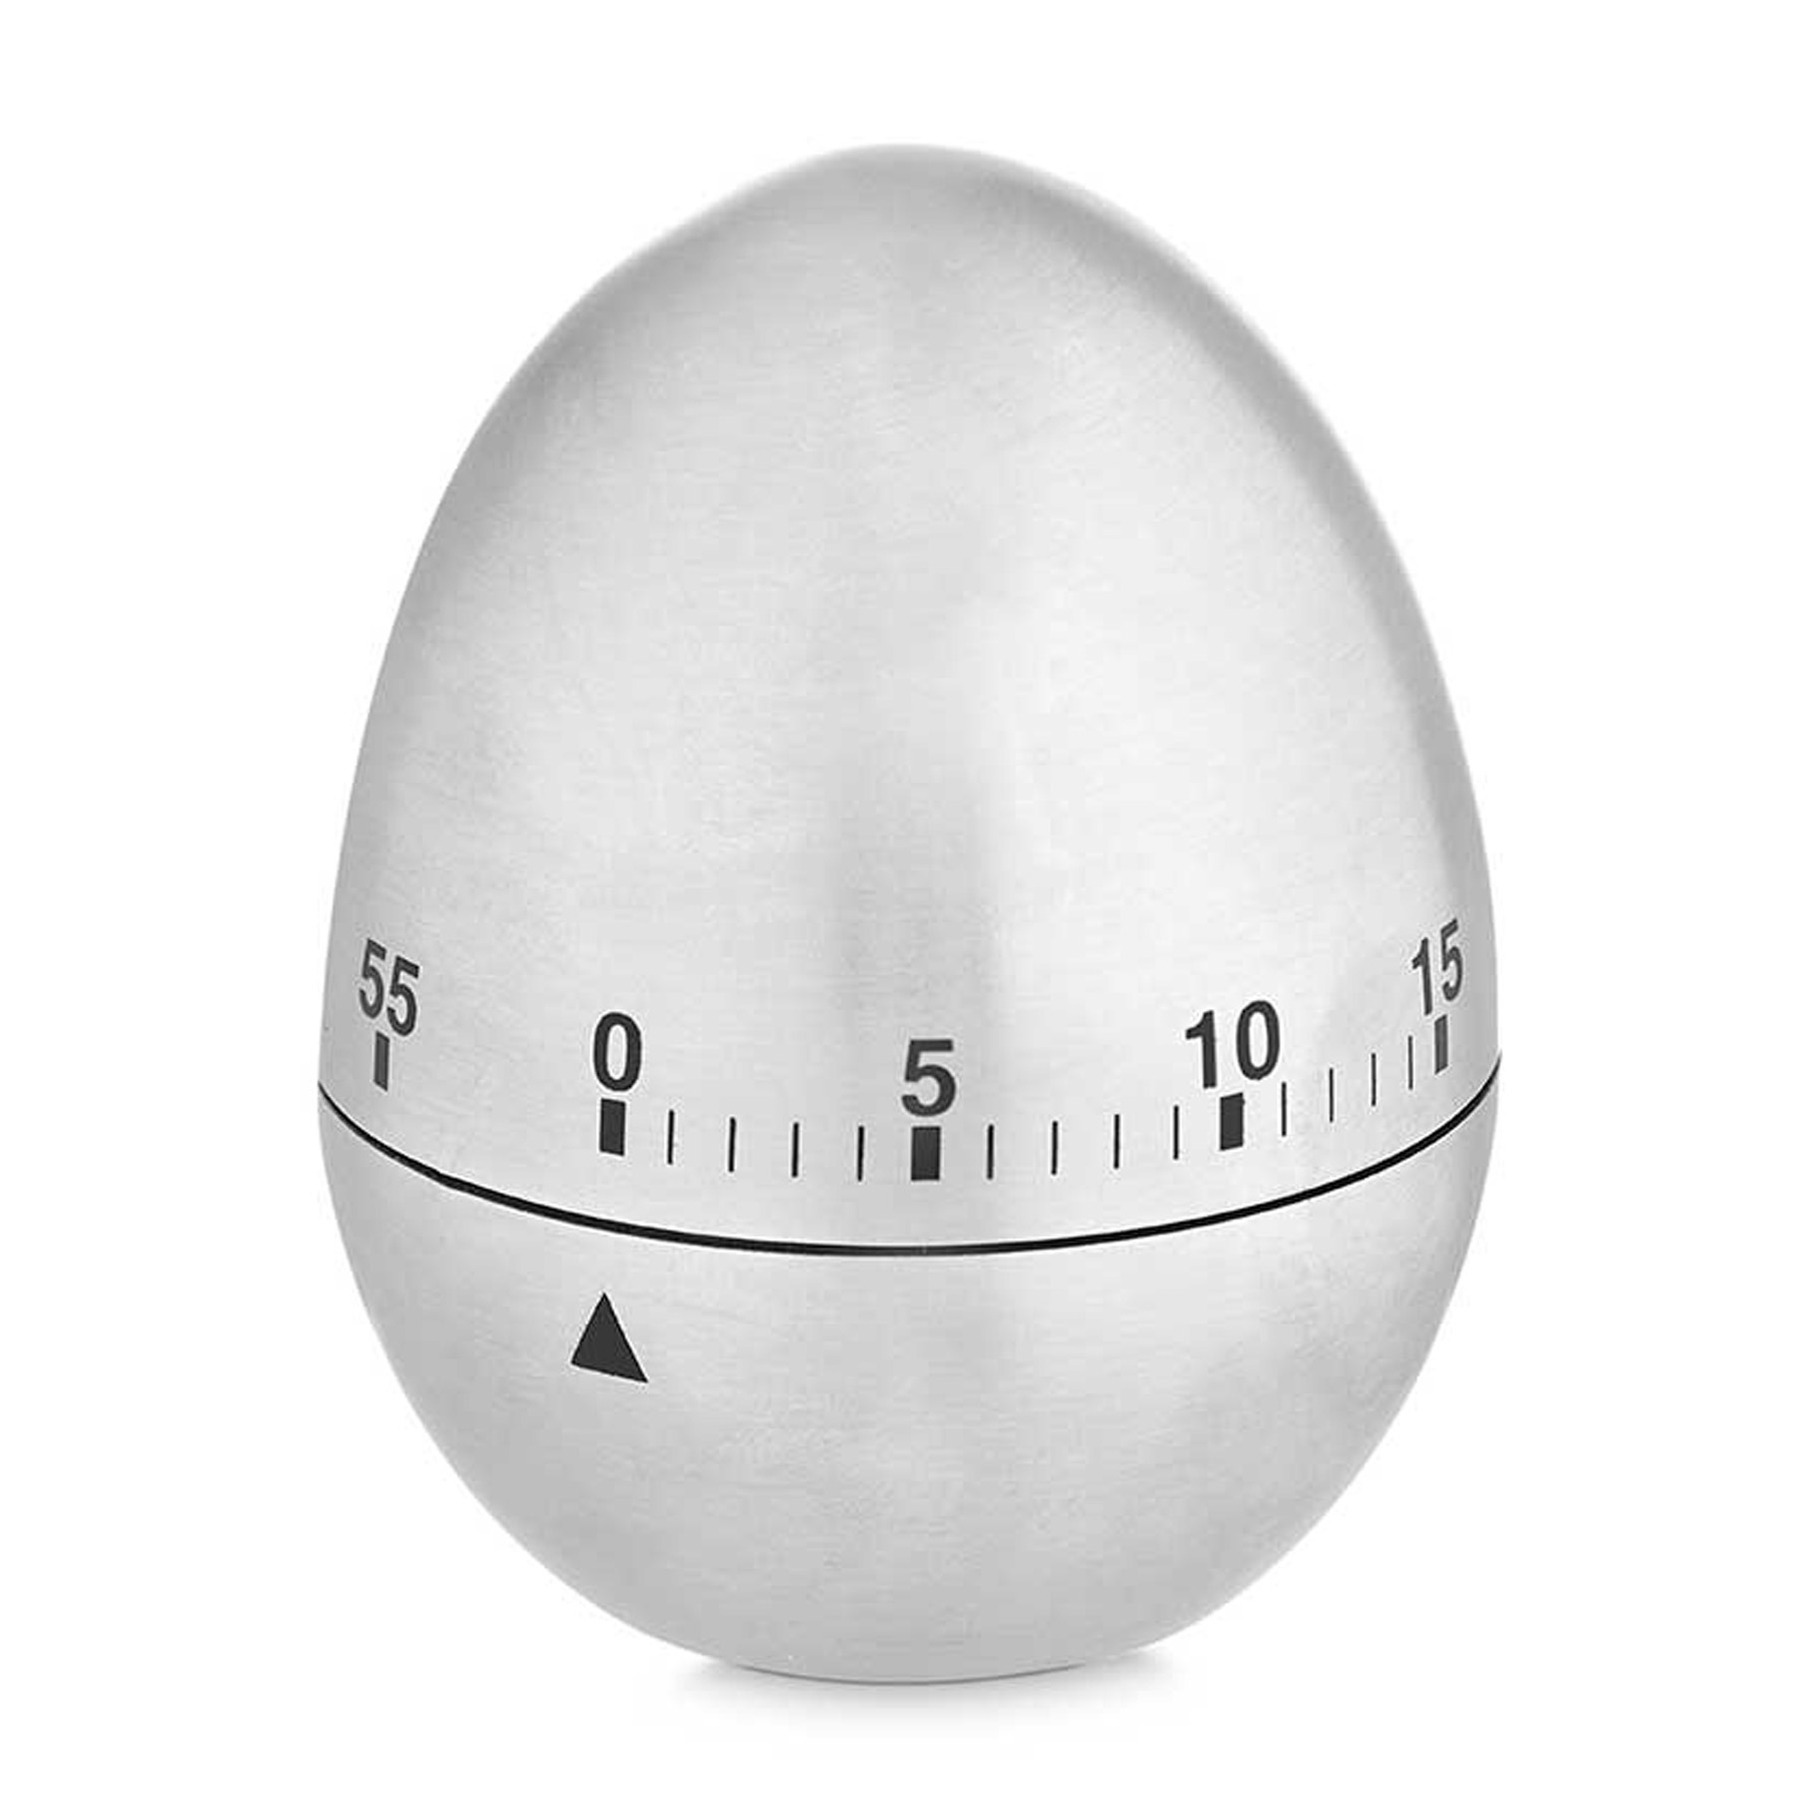 Kinvara Kookwekker/eierwekker in eitjes vorm - zilver - RVS - 7.5 cm - minuten telling -